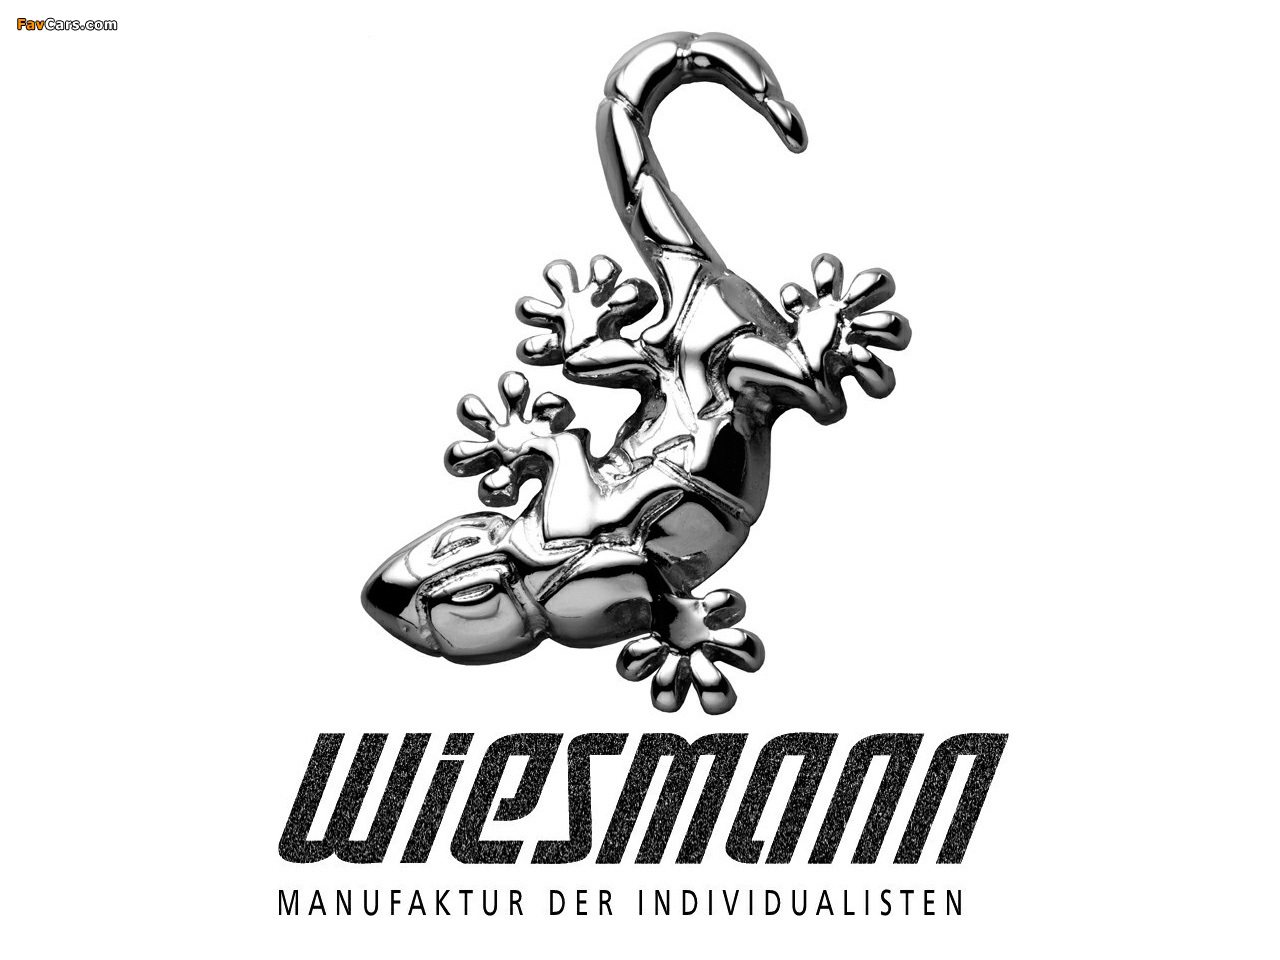 Wiesmann photos (1280 x 960)